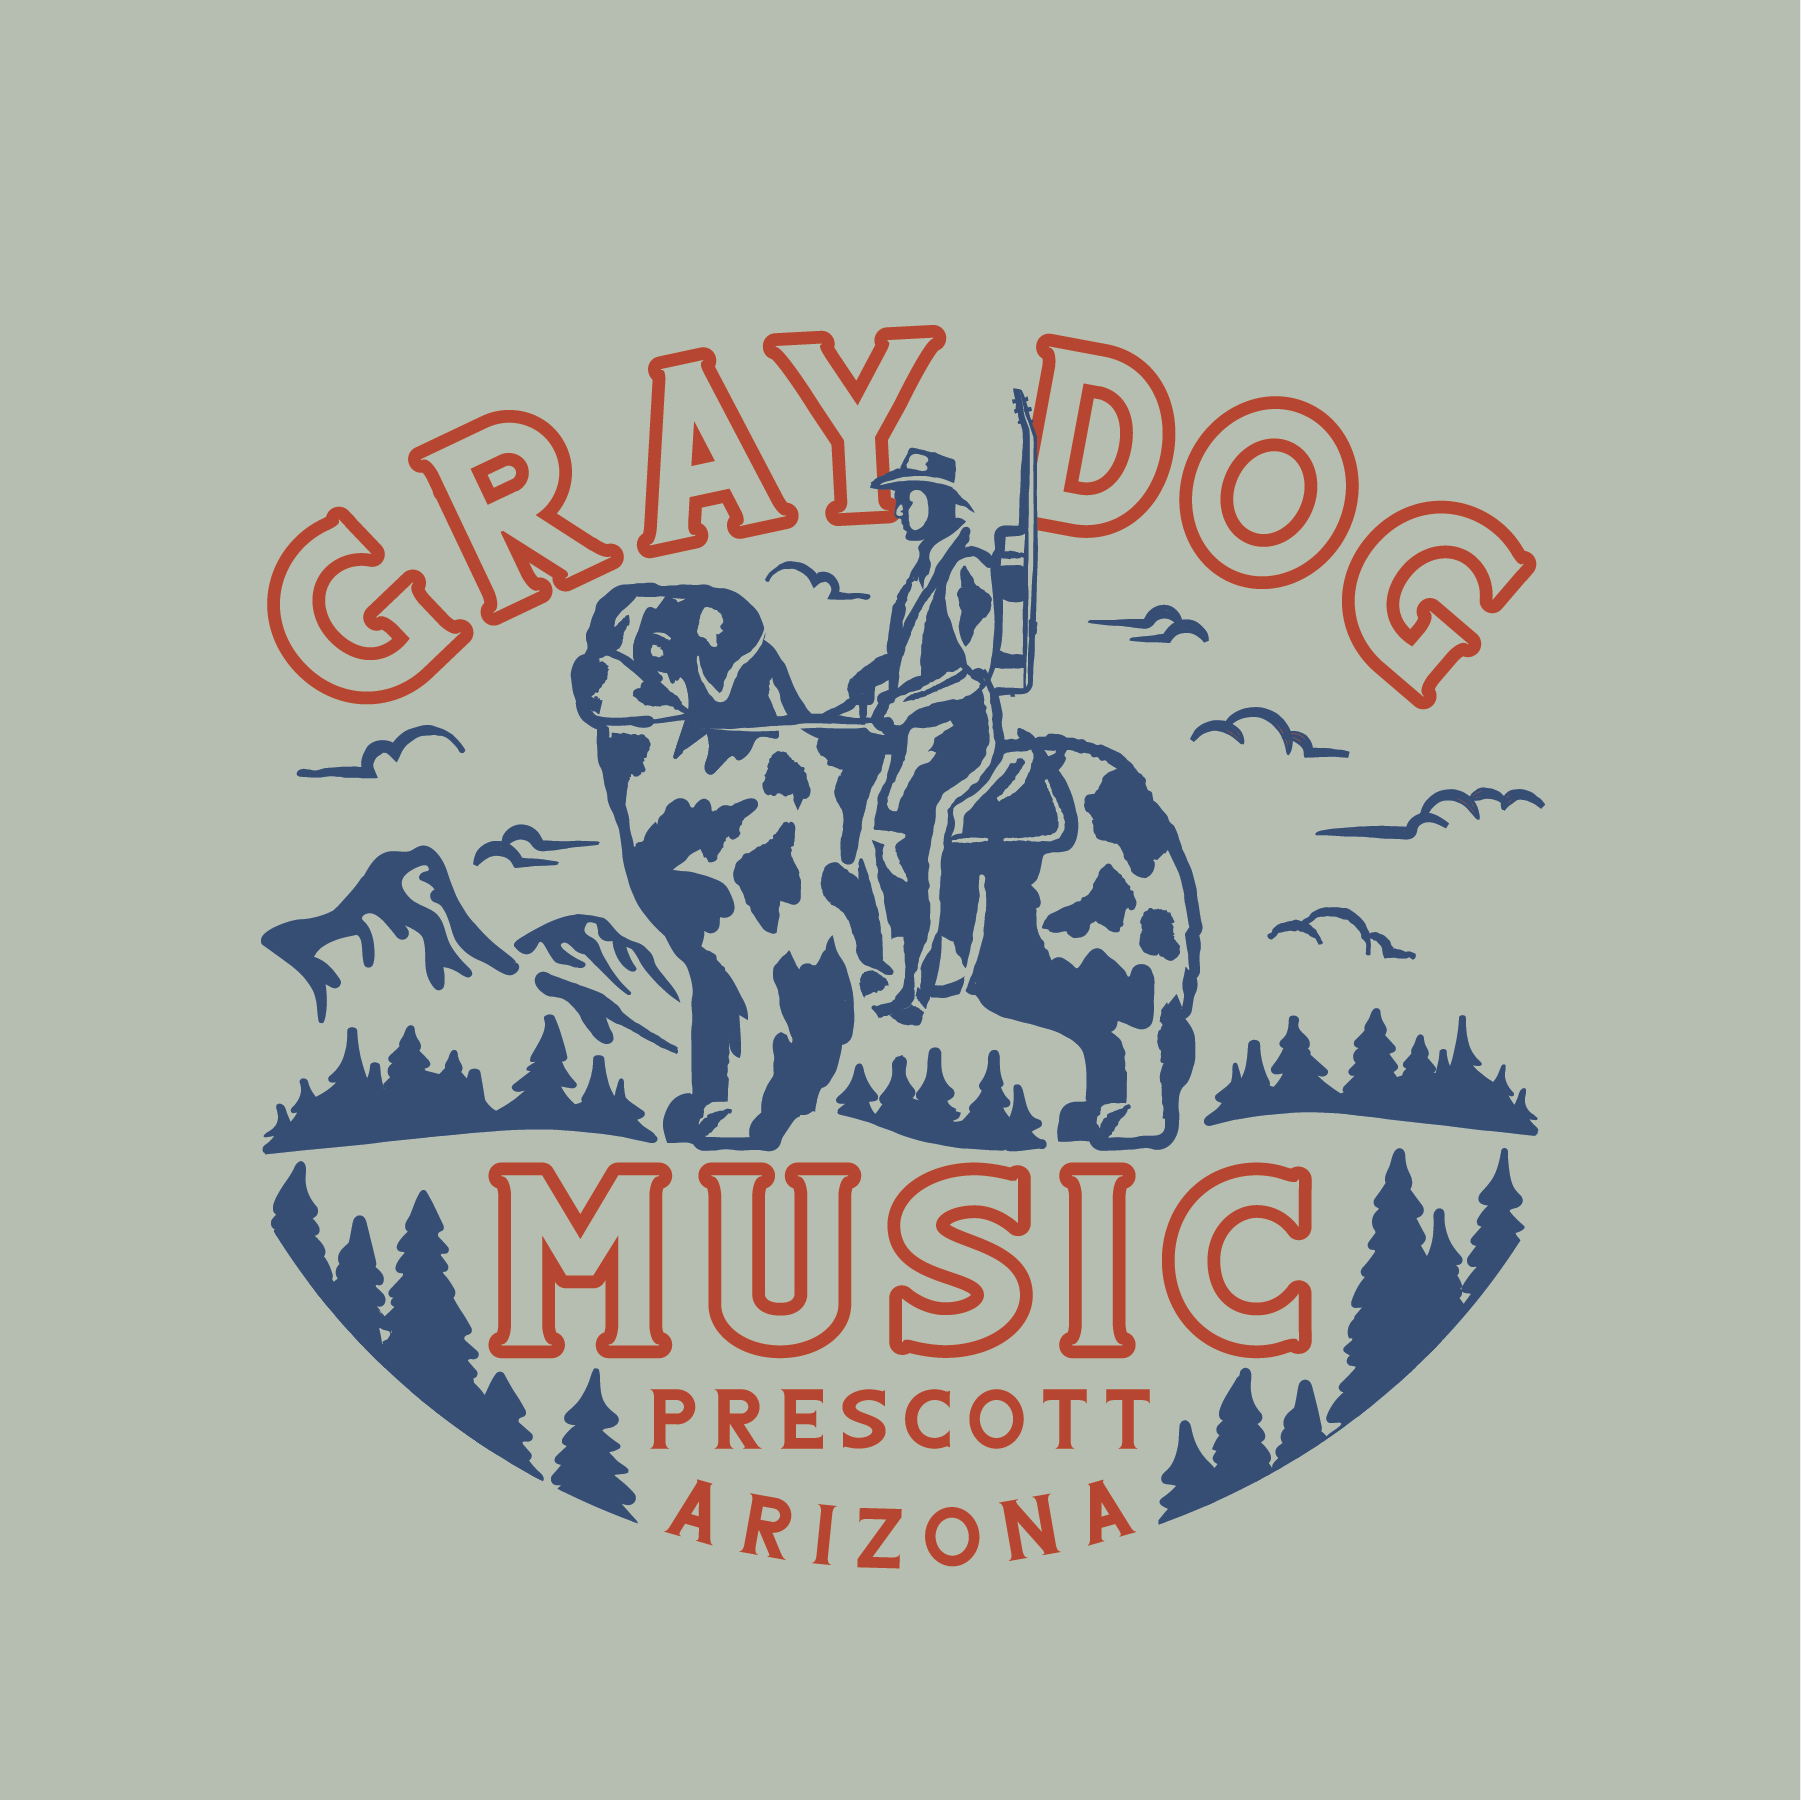 Gray Dog Guitars, Prescott, AZ